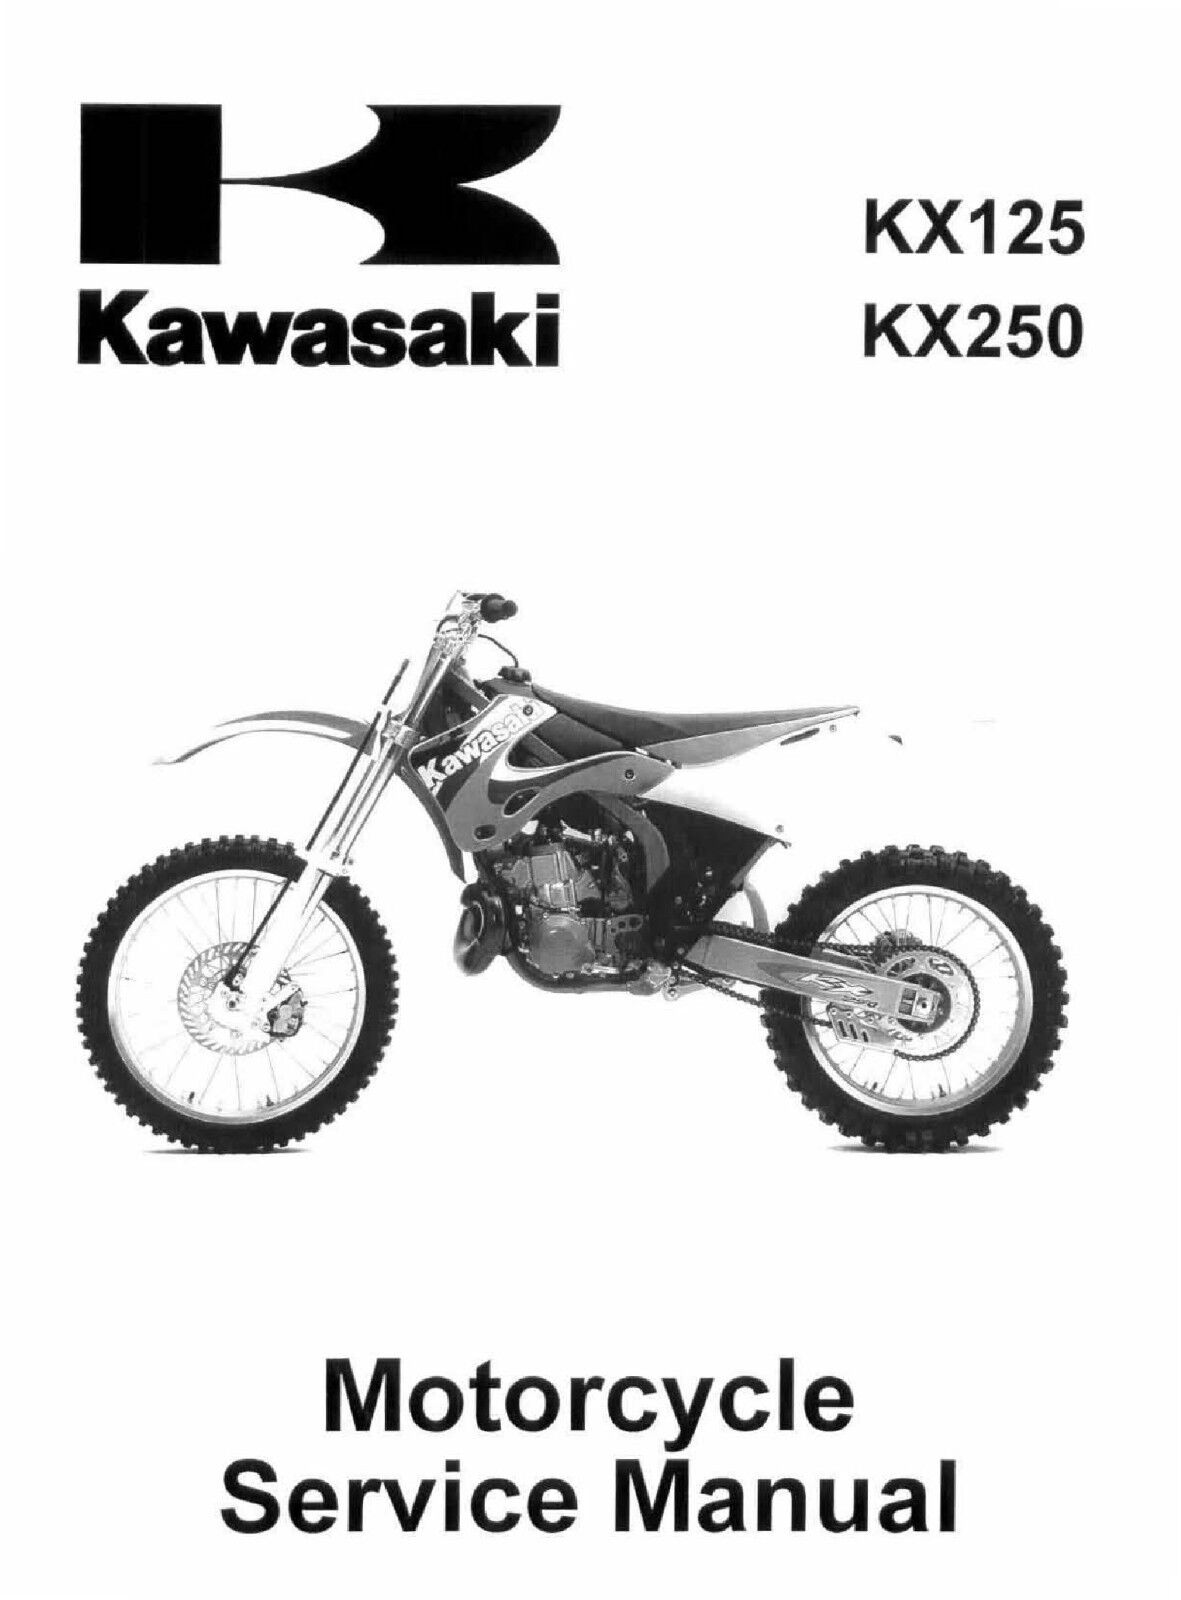 New Kawasaki KX 125 & KX 250, 1999 2000 2001 2002 Service Manual, 